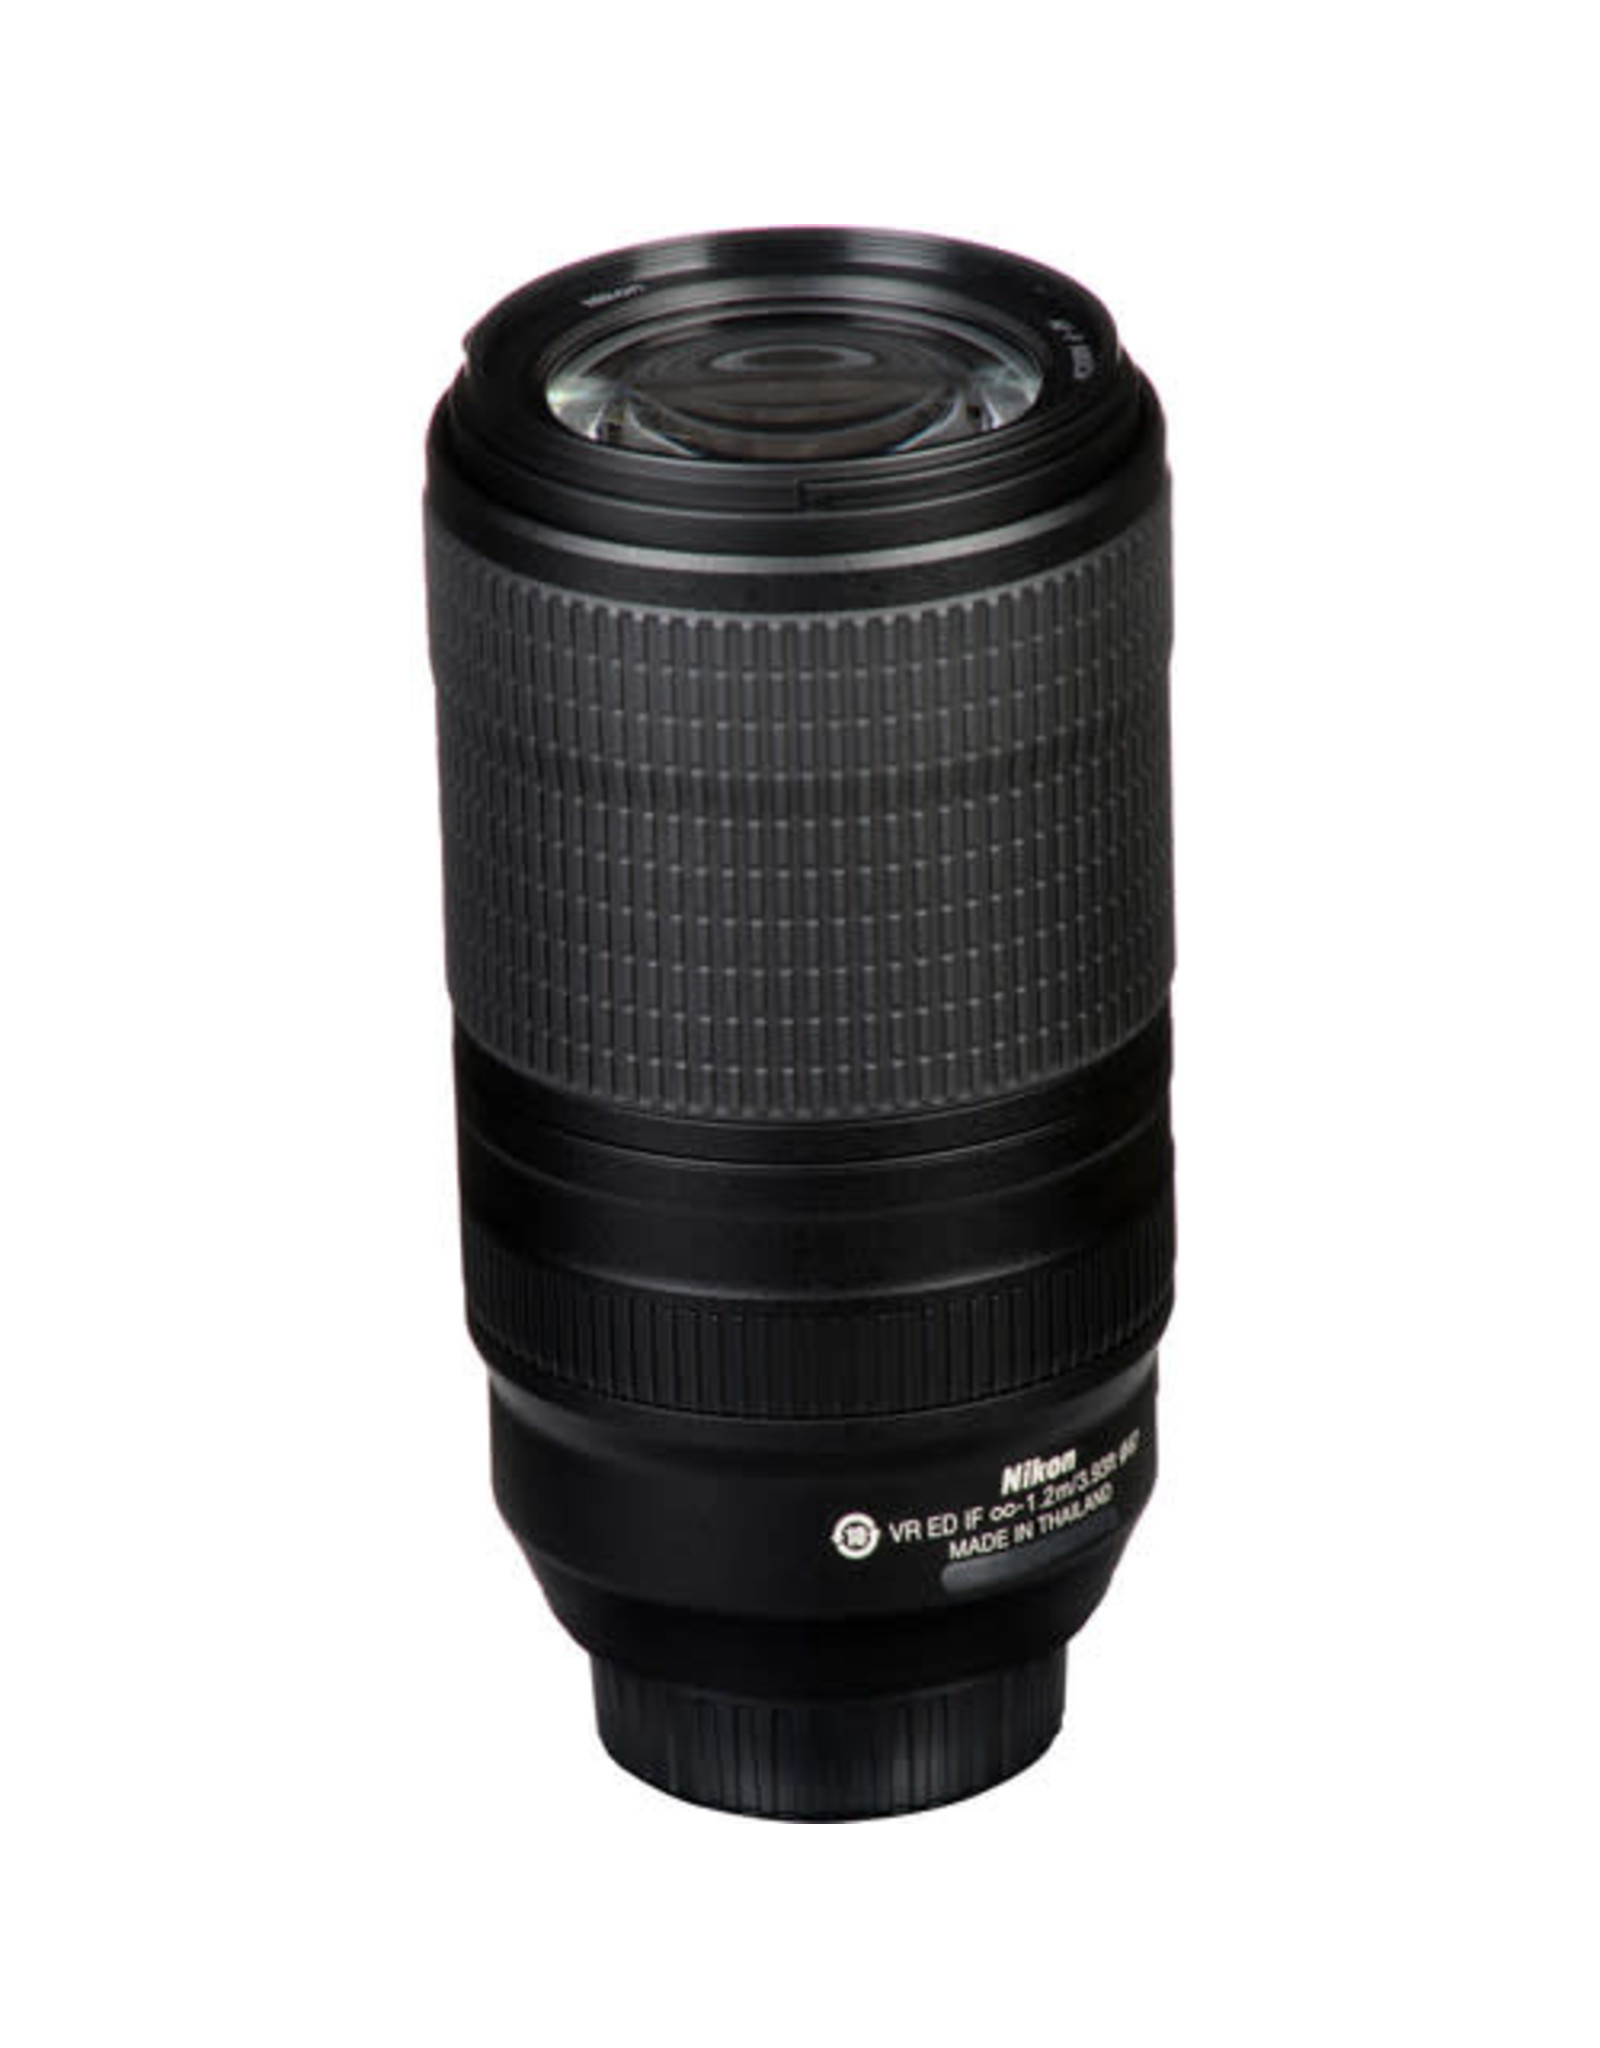 Nikon Nikon AF-P NIKKOR 70-300mm f/4.5-5.6E ED VR Lens